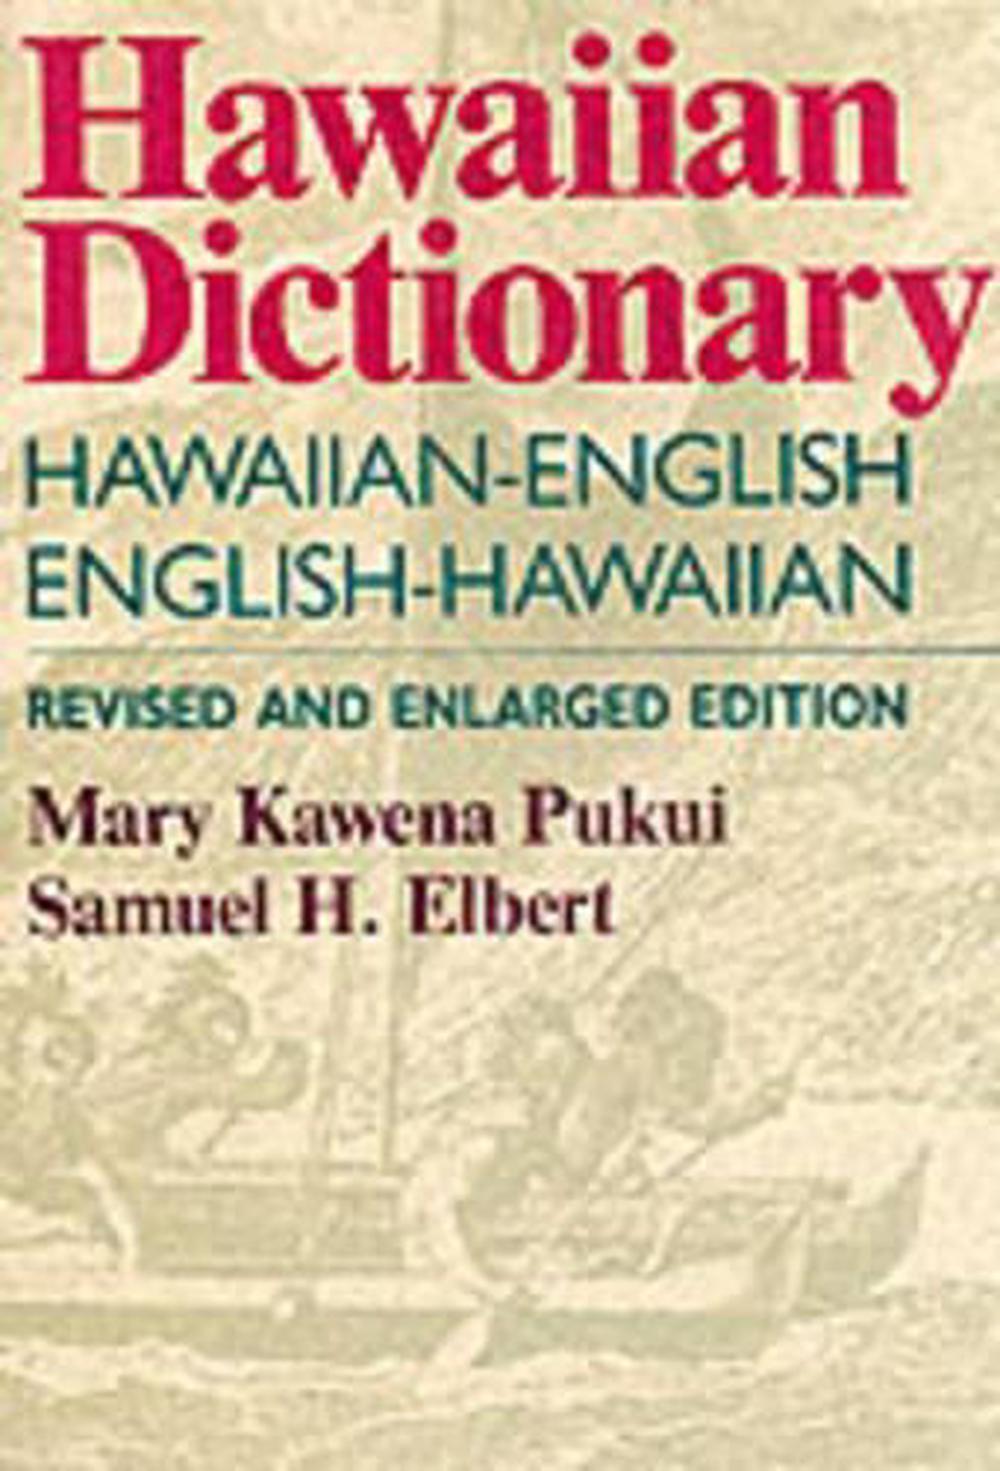 pidgin english pidgin english hawaiian dictionary